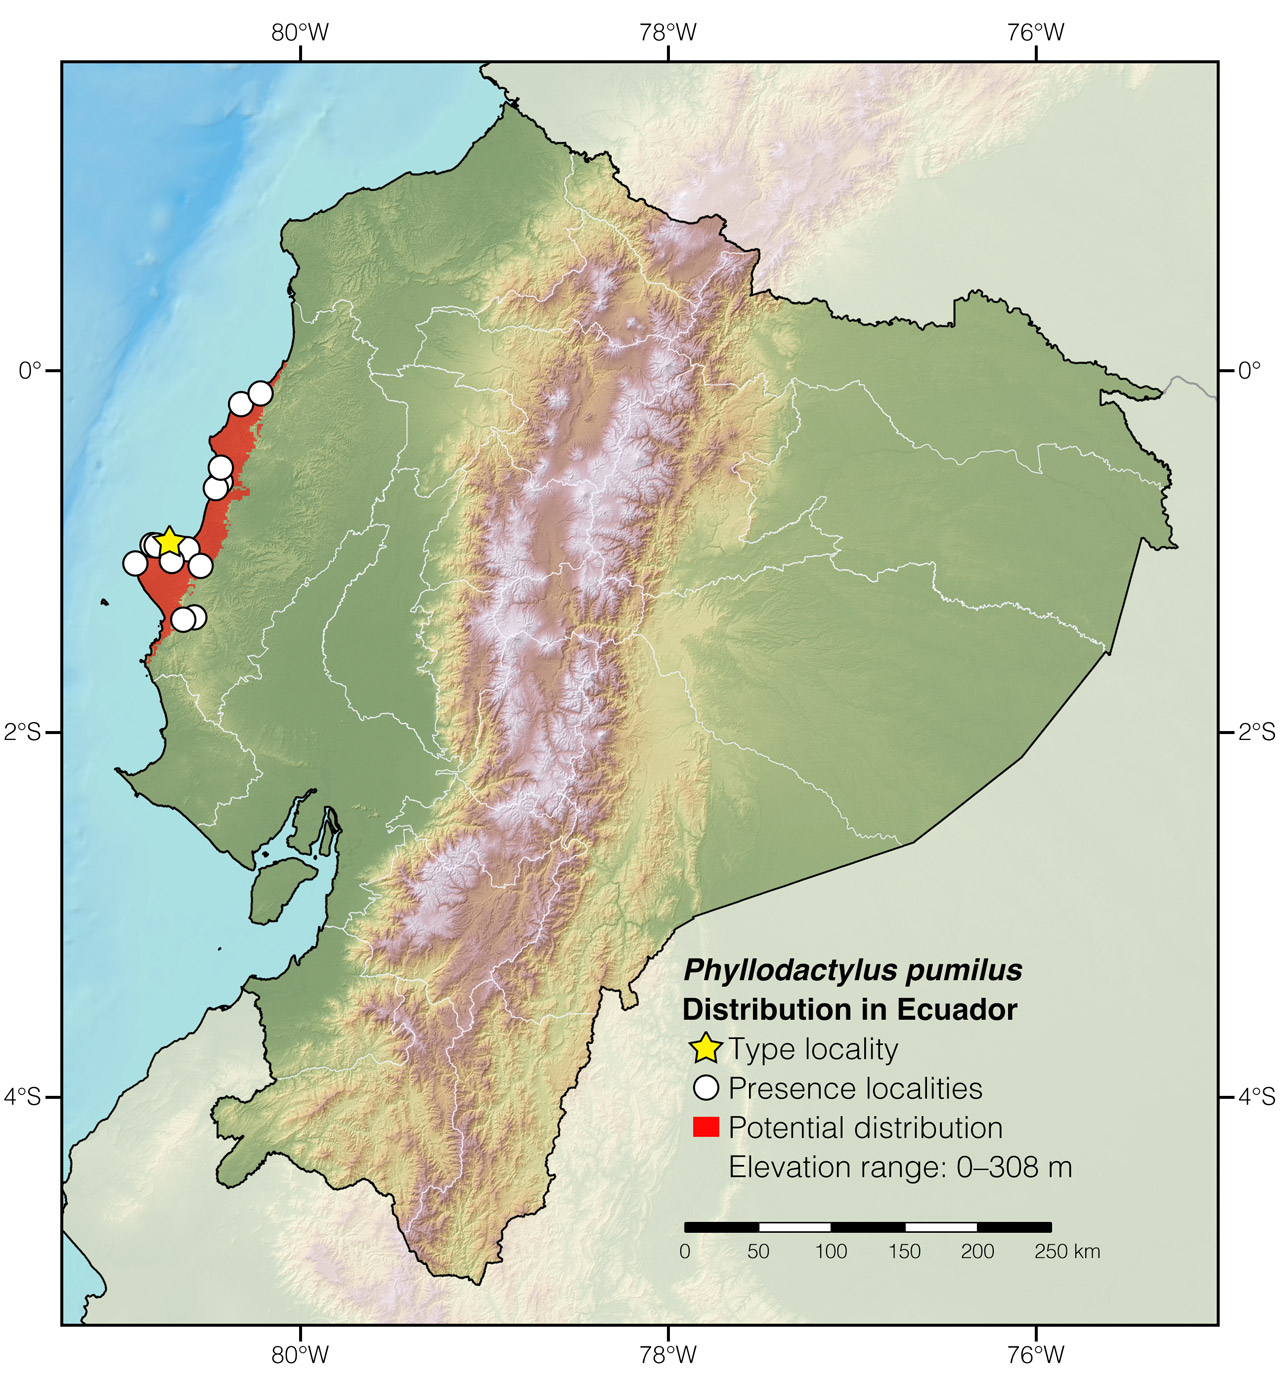 Distribution of Phyllodactylus pumilus in Ecuador